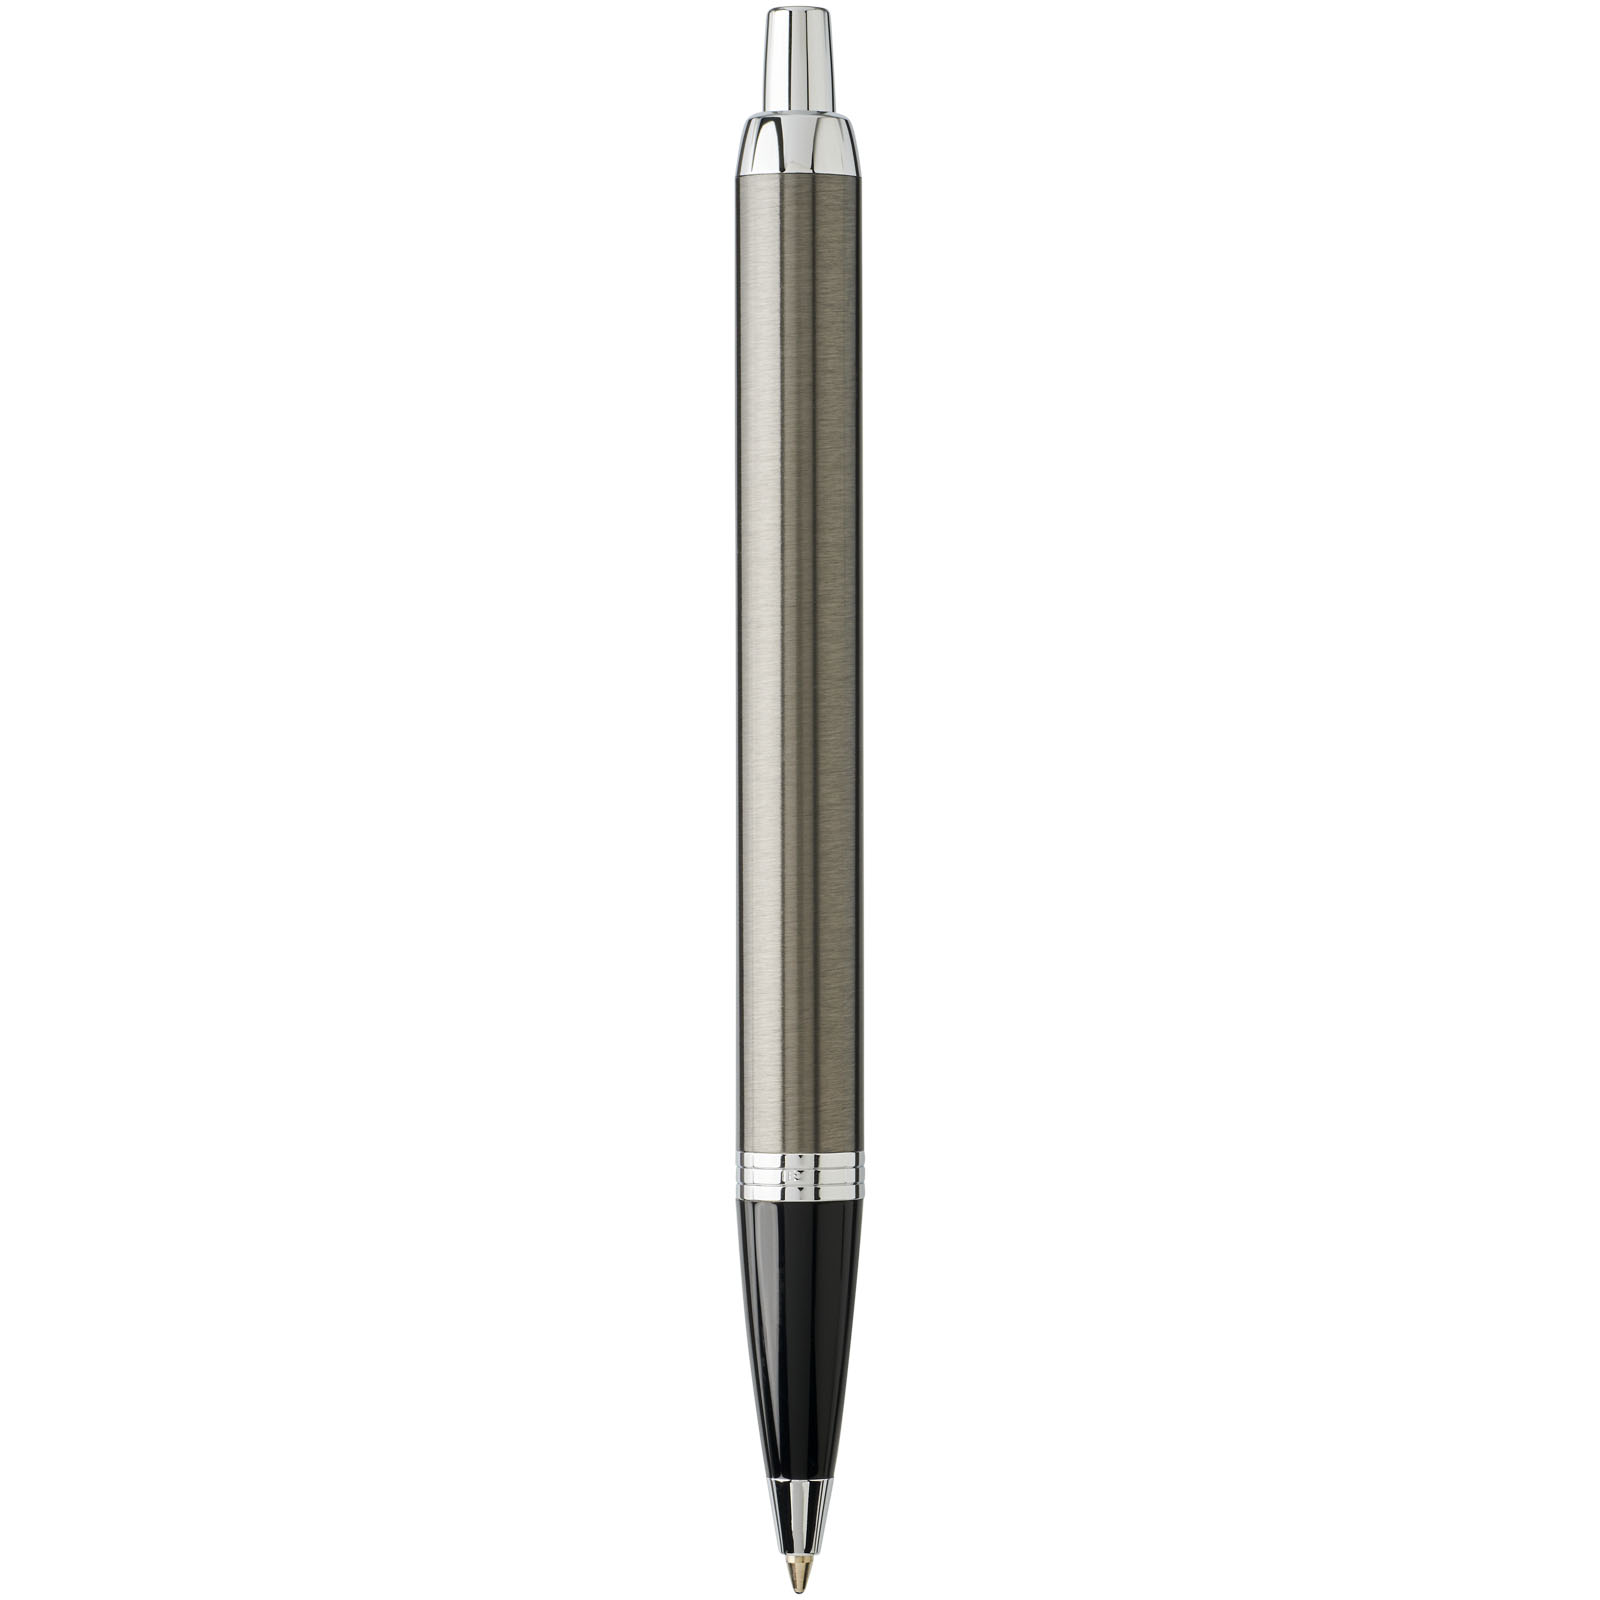 Advertising Ballpoint Pens - Parker IM ballpoint pen - 3